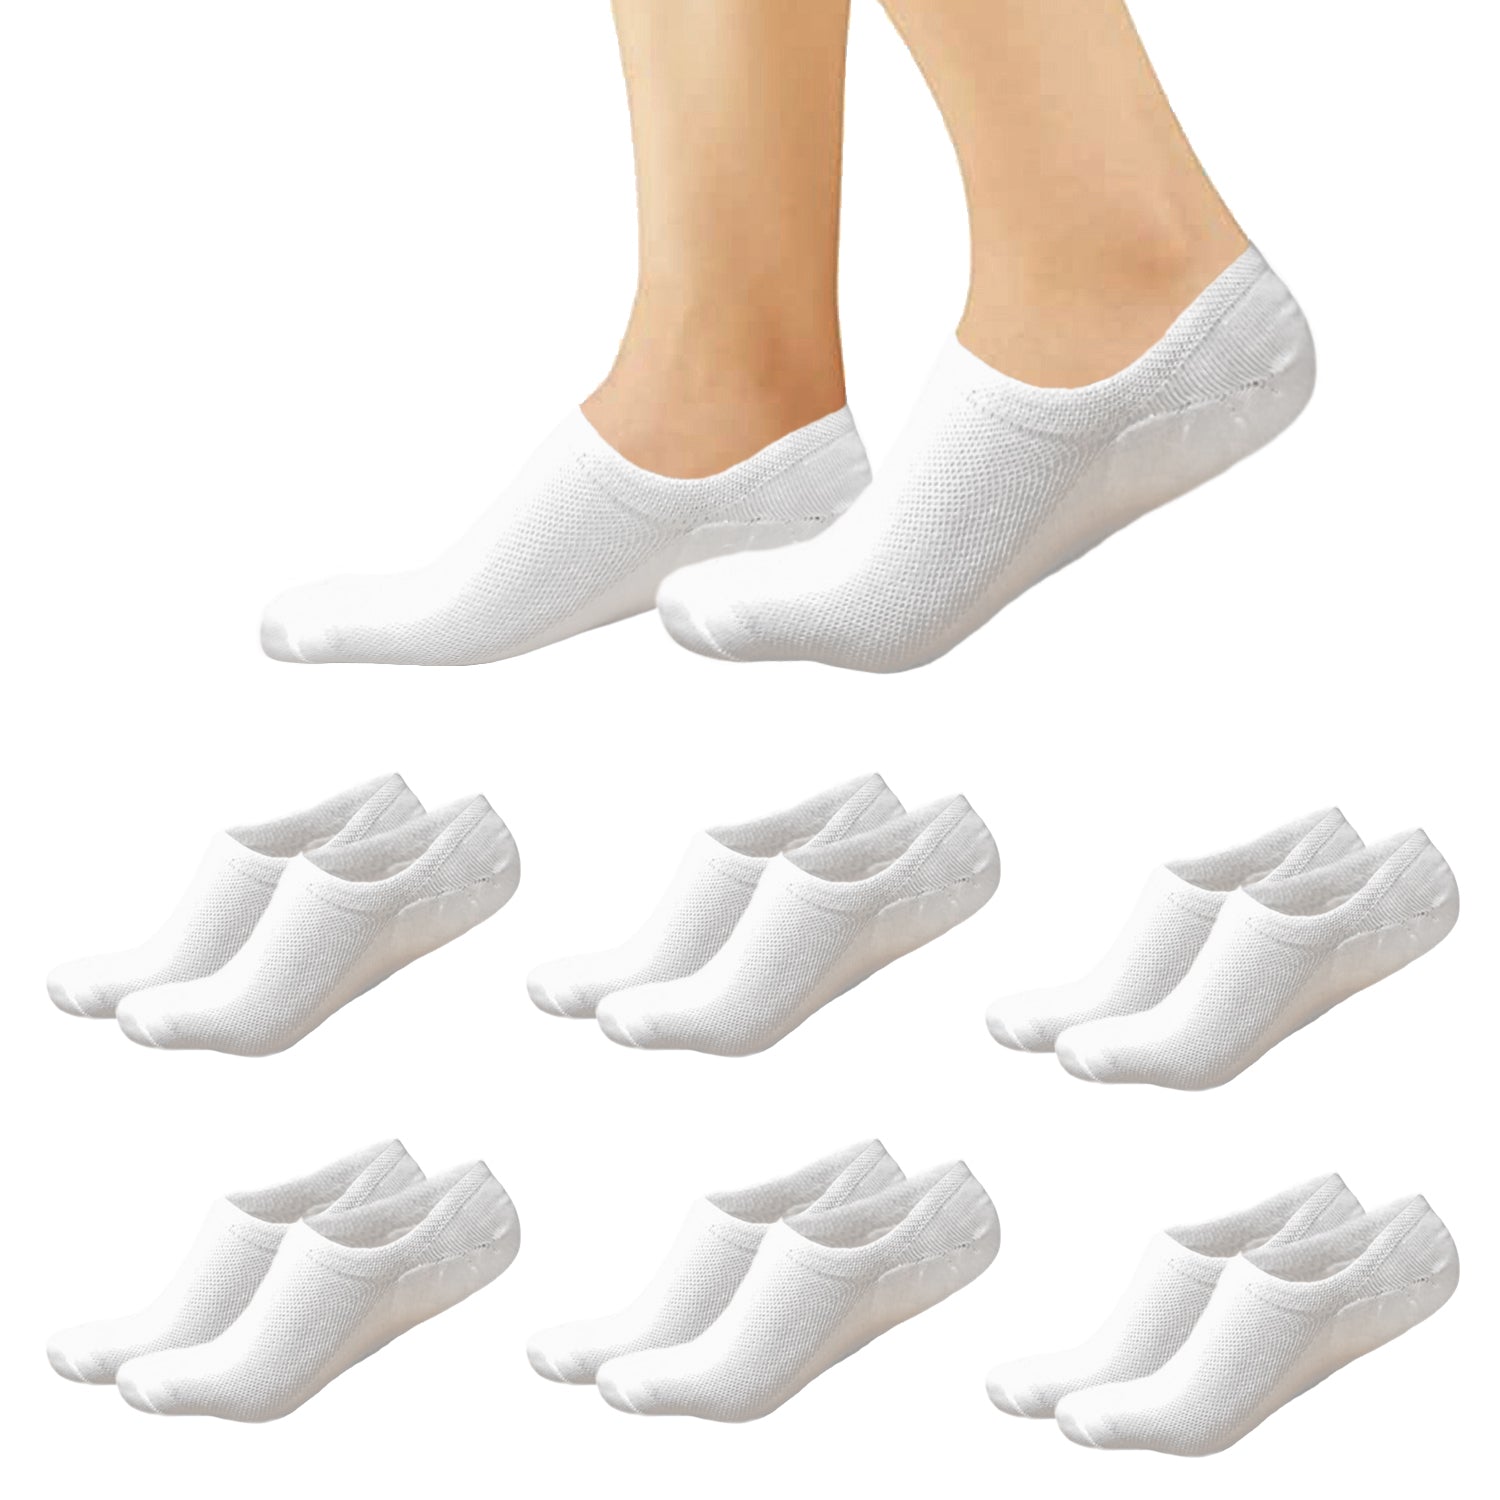 Calcetines invisibles hombre - Pinkies hombre - Calcetines cortos hombre - Calcetines blancos hombre - Calcetines tobilleros hombre (Talla 40/46)